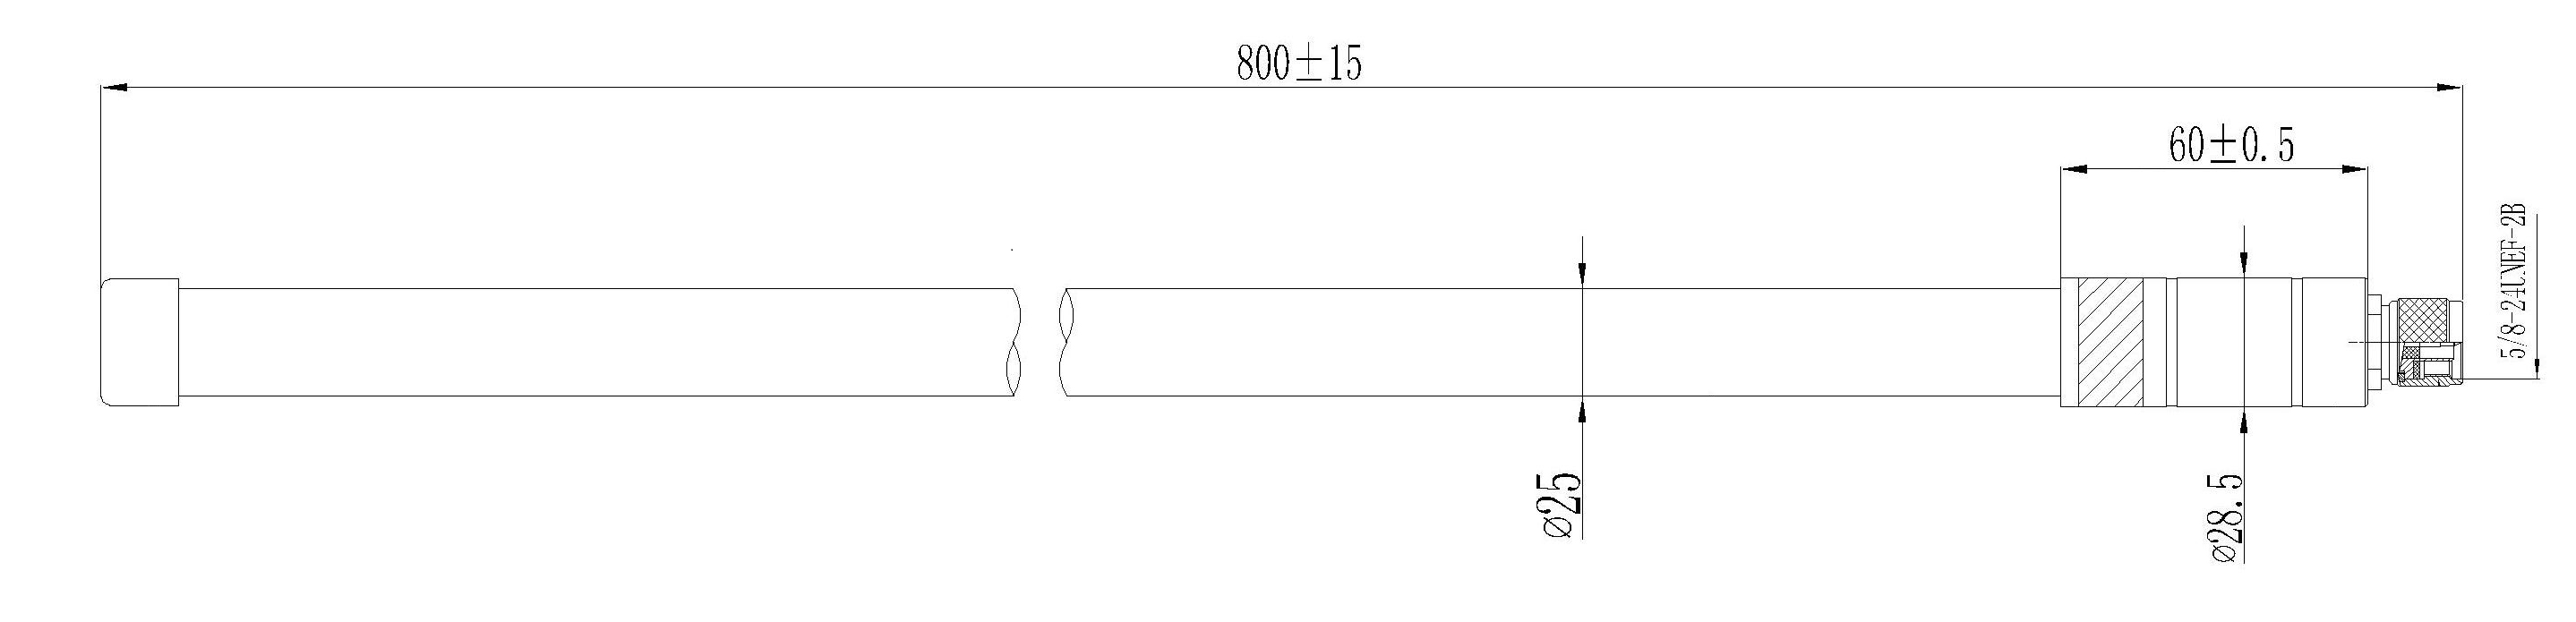 LoRa Fiberglass Antenna Type N - 5.8 dBi (863-870 MHz) - Click to Enlarge